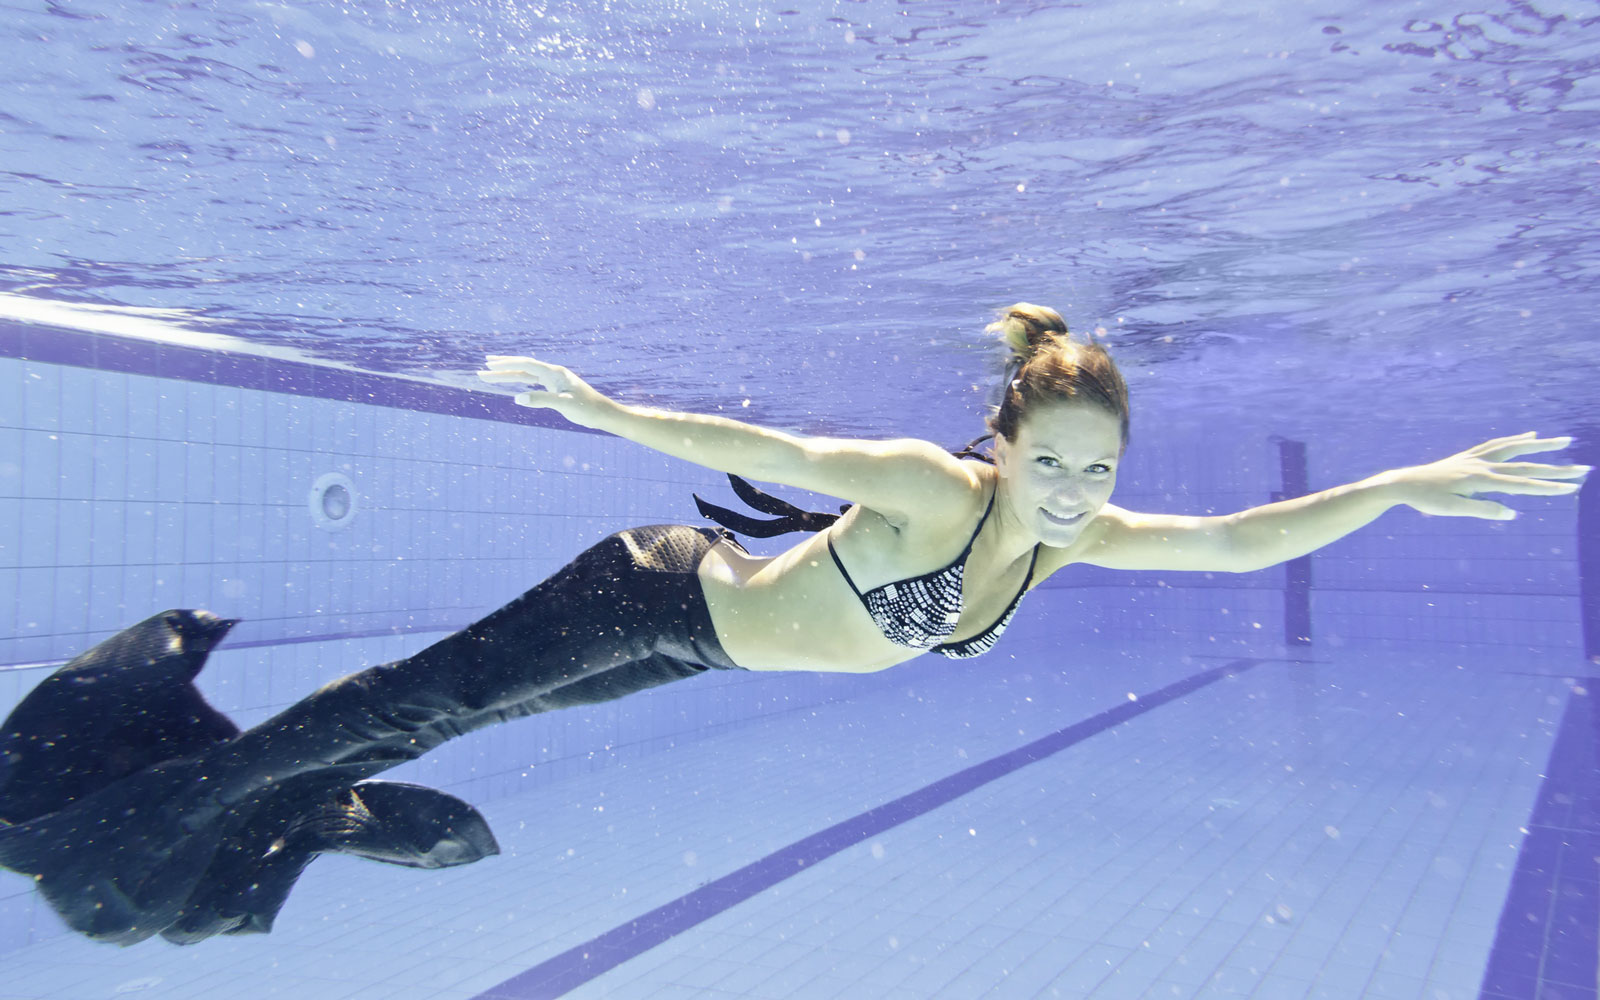 Mermaiding, nuotare con la coda da sirena è il nuovo trend dell'estate  2021: di cosa si tratta e quali sono i benefici